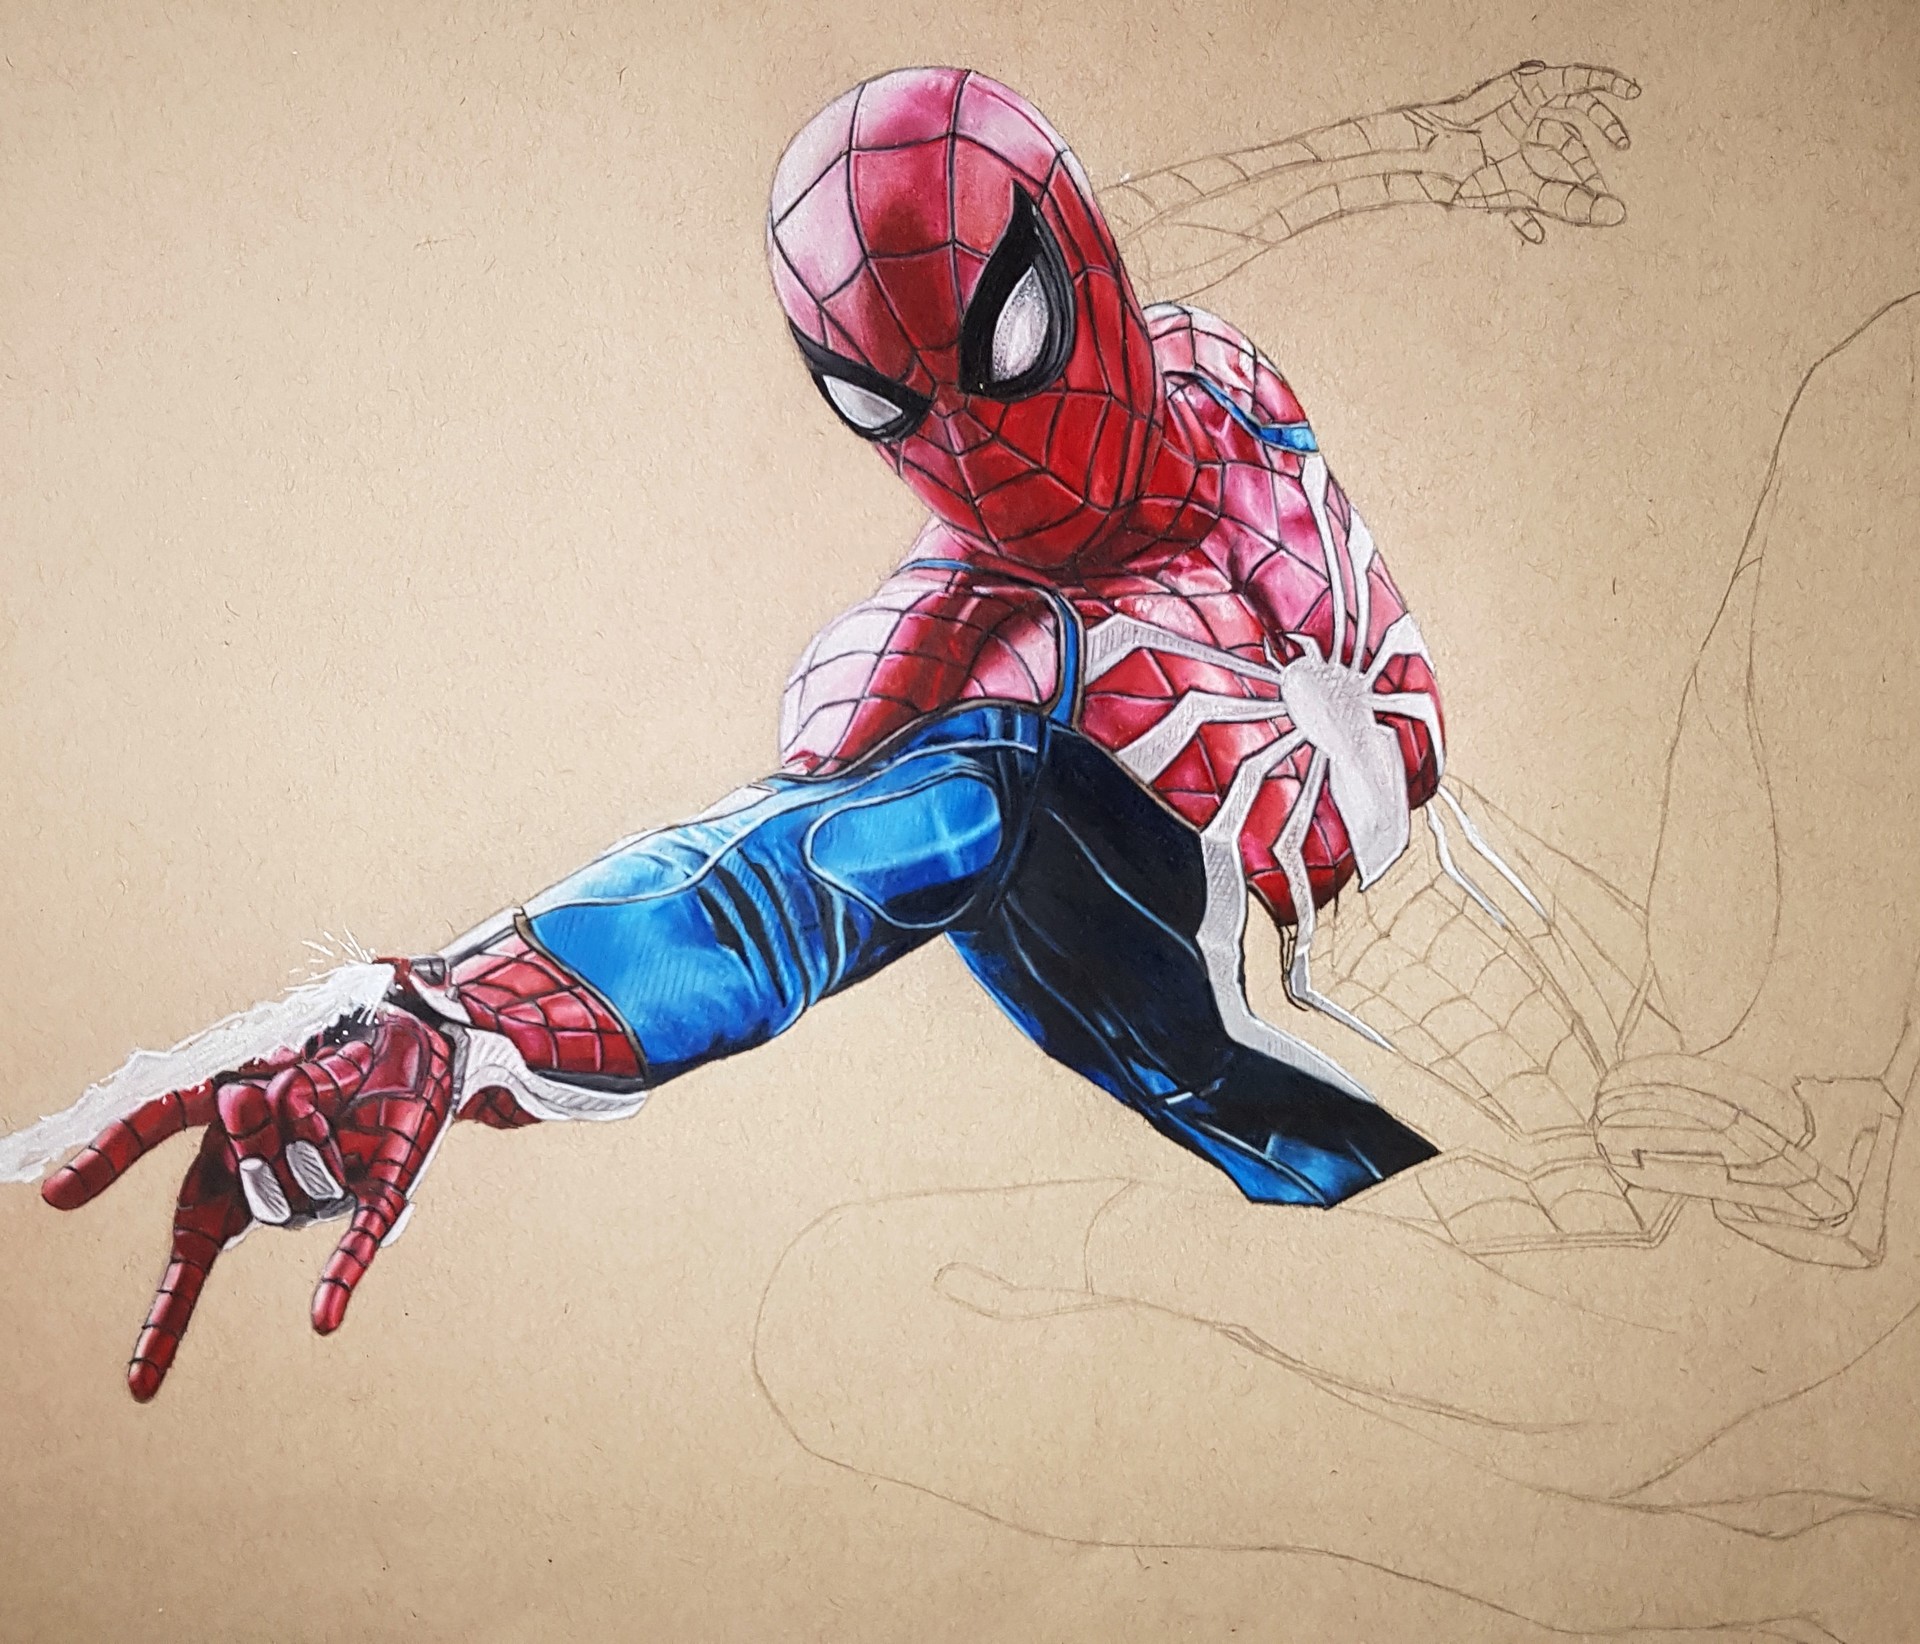 ArtStation - Spider-Man PS4 Drawing